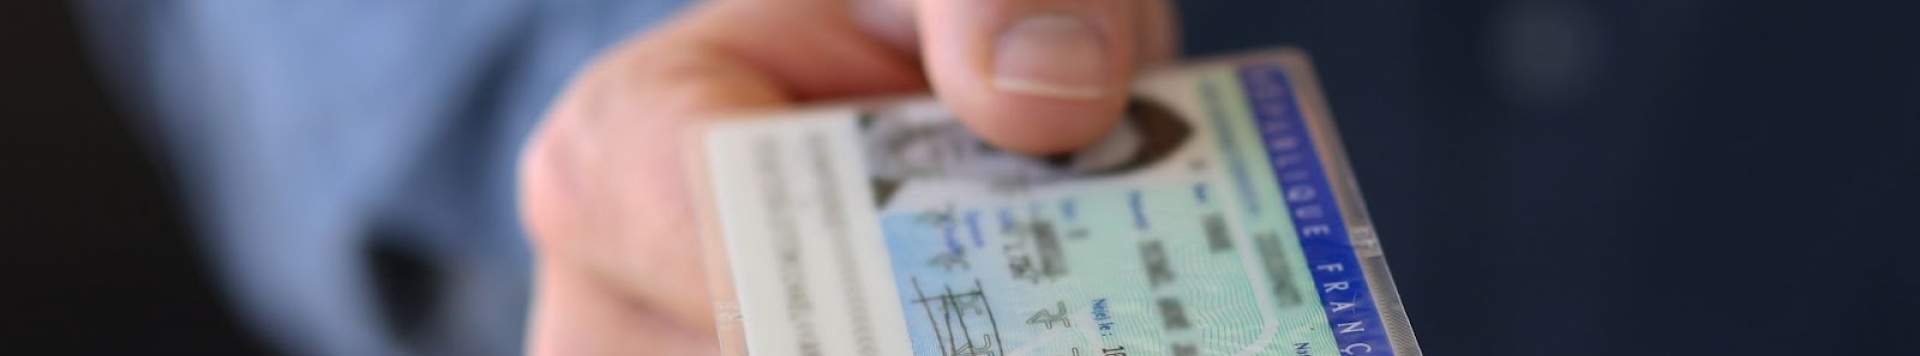 Peut-on voyager avec une carte d'identité de plus de 10 ans ?